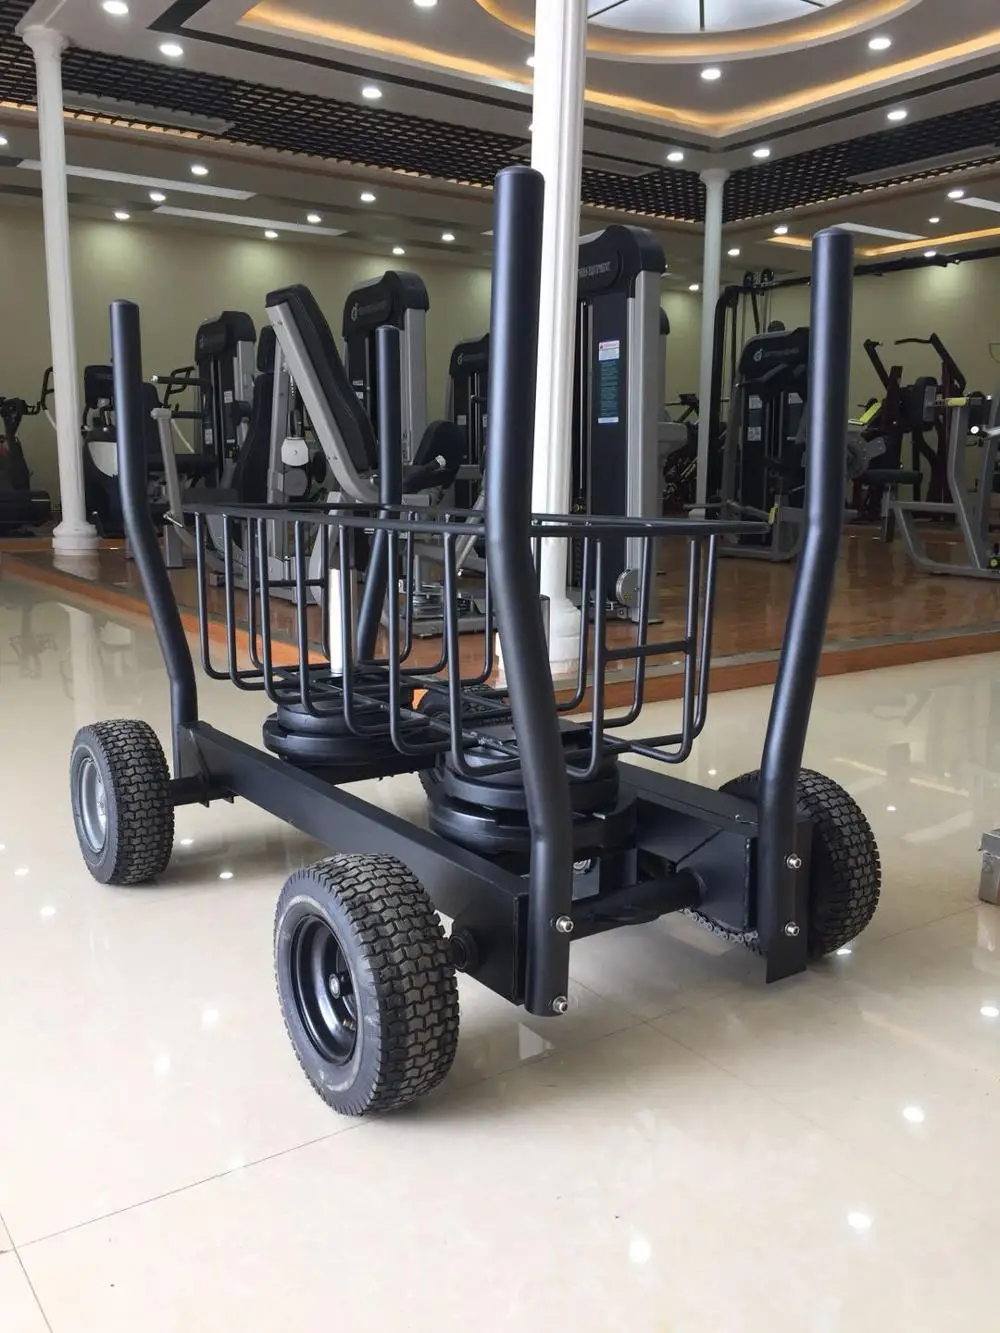 Оборудование для фитнеса JInggong, заводская цена, высокое качество, мощный танк, сани, тренажерный зал, тренажеры для фитнеса